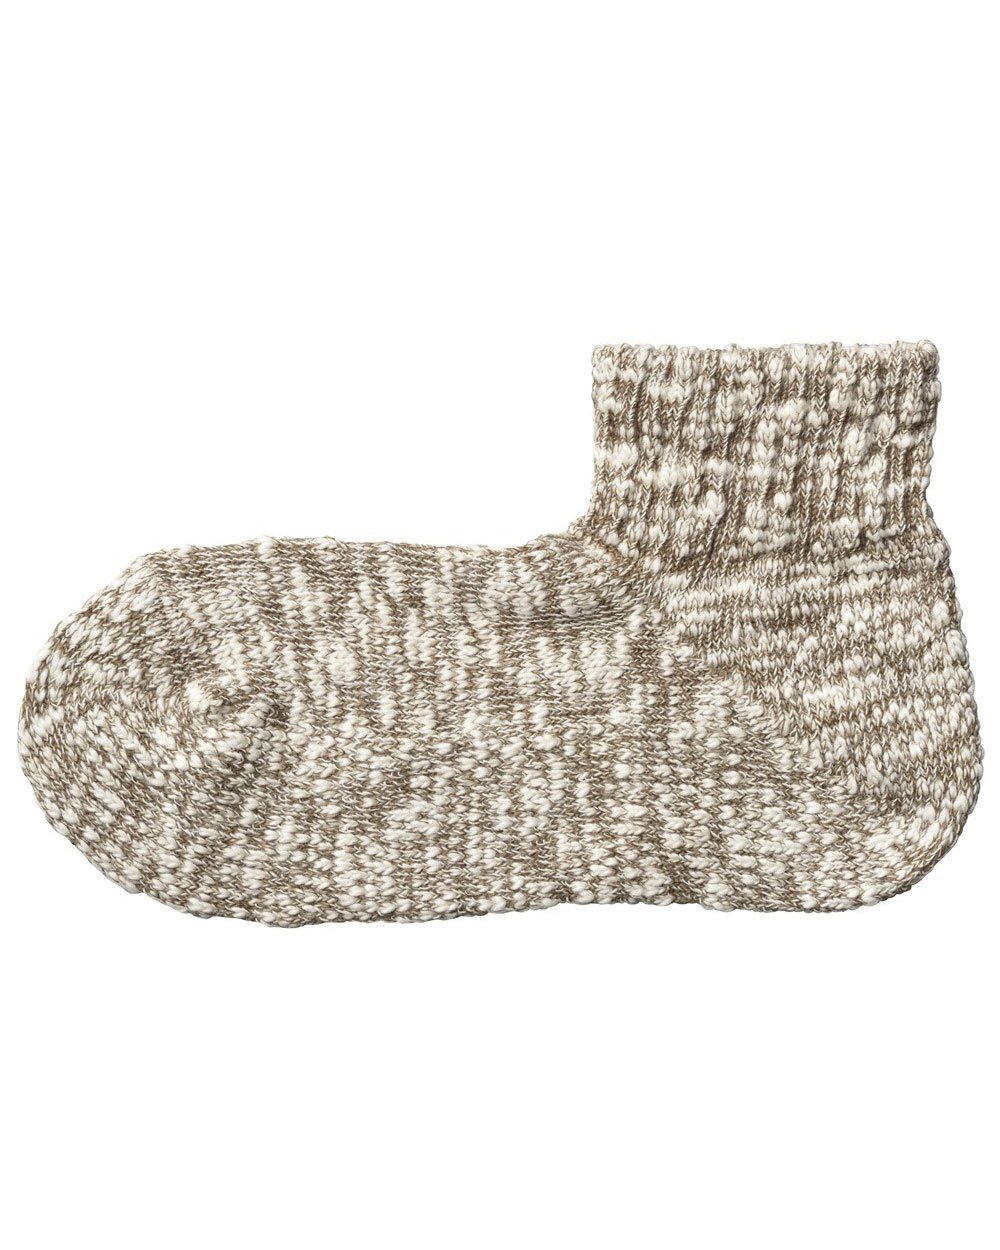 Snow Peak（スノーピーク）Gara Gara Socks糸の太さが不均等なスラブ糸を使用しているため、でこぼこした独特の質感が特徴。足のラインに沿ったL字型の靴下。締めつけを感じにくい快適な履き心地。型番：UG-609R-BR-02 JQ8530【採寸】23-25cm商品のサイズについて【商品詳細】素材：綿、アクリル、ポリエステル、レーヨン、ポリウレタンサイズ：S※画面上と実物では多少色具合が異なって見える場合もございます。ご了承ください。商品のカラーについて 【予約商品について】 ※「先行予約販売中」「予約販売中」をご注文の際は予約商品についてをご確認ください。■重要なお知らせ※ 当店では、ギフト配送サービス及びラッピングサービスを行っておりません。ご注文者様とお届け先が違う場合でも、タグ（値札）付「納品書 兼 返品連絡票」同梱の状態でお送り致しますのでご了承ください。 ラッピング・ギフト配送について※ 2点以上ご購入の場合、全ての商品が揃い次第一括でのお届けとなります。お届け予定日の異なる商品をお買い上げの場合はご注意下さい。お急ぎの商品がございましたら分けてご購入いただきますようお願い致します。発送について ※ 買い物カートに入れるだけでは在庫確保されませんのでお早めに購入手続きをしてください。当店では在庫を複数サイトで共有しているため、同時にご注文があった場合、売切れとなってしまう事がございます。お手数ですが、ご注文後に当店からお送りする「ご注文内容の確認メール」をご確認ください。ご注文の確定について ※ Rakuten Fashionの商品ページに記載しているメーカー希望小売価格は、楽天市場「商品価格ナビ」に登録されている価格に準じています。 商品の価格についてSnow PeakSnow Peakの靴下靴下・レッグウェアご注文・お届けについて発送ガイドラッピンググッズ3,980円以上送料無料ご利用ガイド